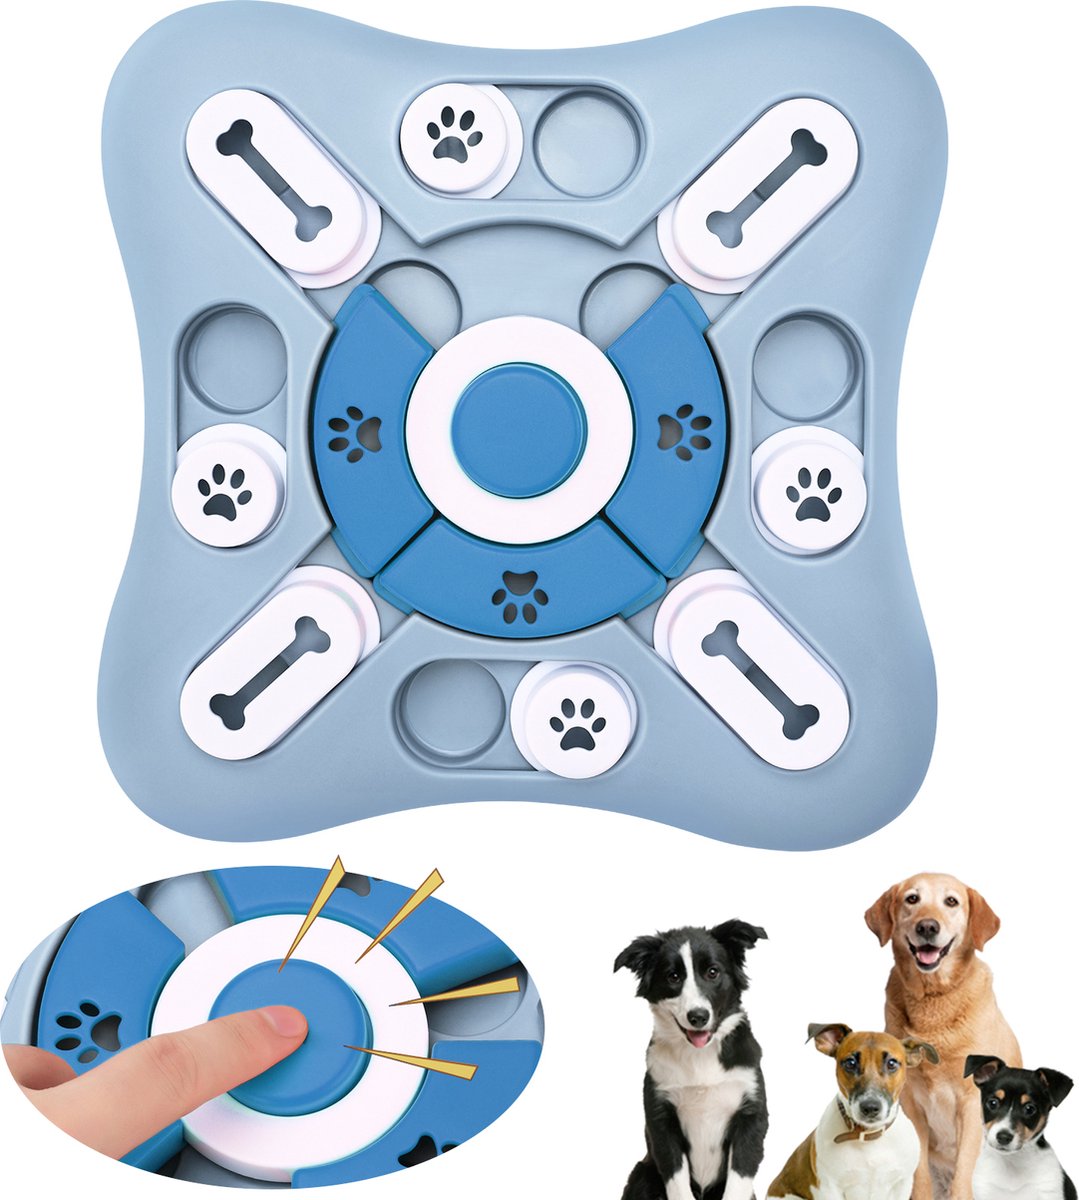 Interactieve Honden Puzzel - Honden Trainer - Speelgoed voor de Hond - Interactief Speelgoed - Hondenpuzzel - Training voor de Hond of Pup - Slow Feeding | intelligent speelgoed